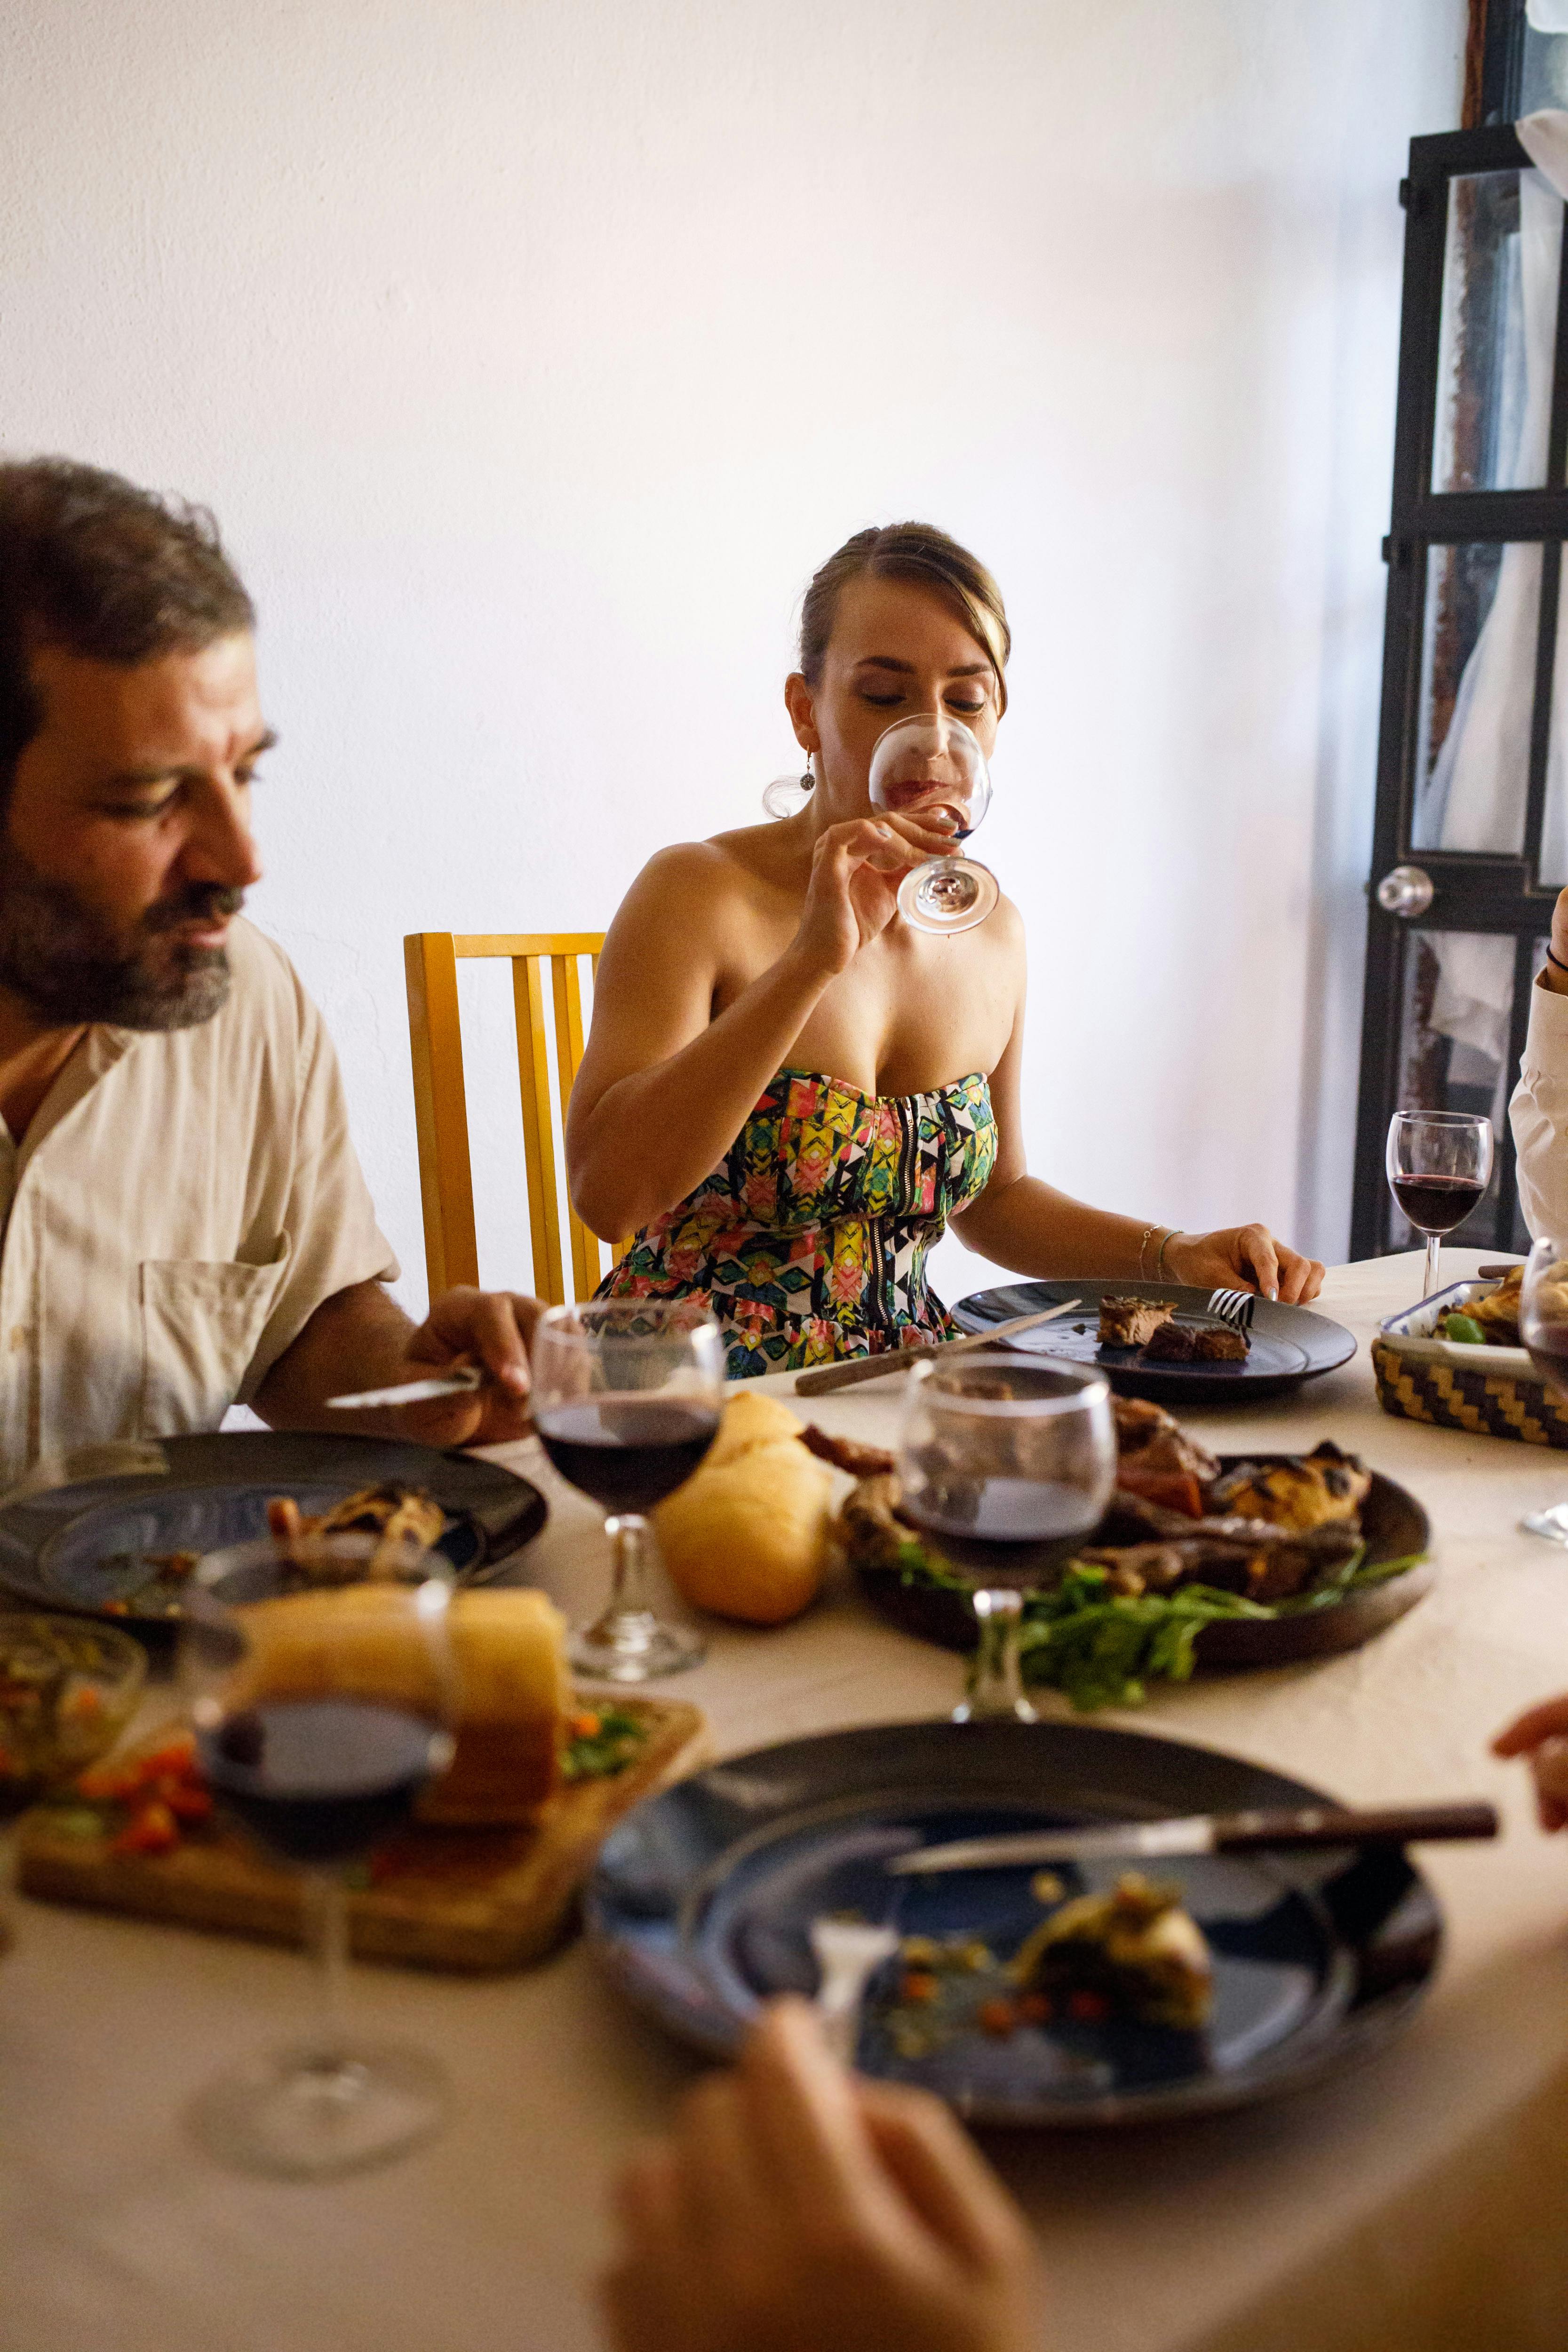 Una familia disfrutando de una comida juntos | Fuente: Pexels